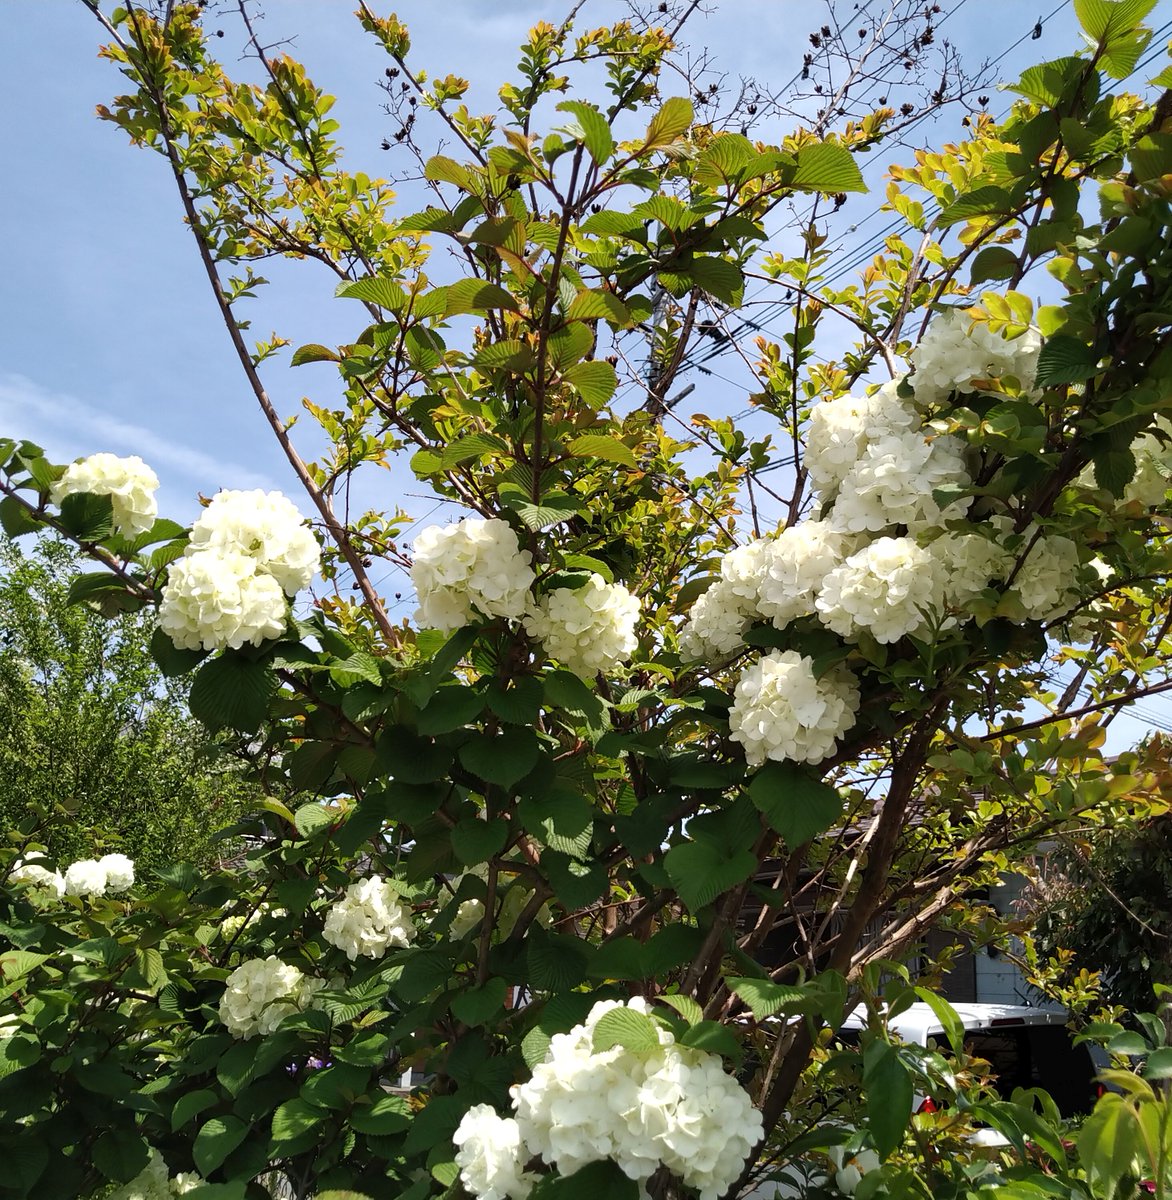 オオデマリは、その洗練された美しさで人々を魅了します。

花言葉は「華やかな恋」「絆」「私は誓います」

オオデマリの美しさと清潔感を共有しましょう。

 #オオデマリ #白い花 #新たな始まり